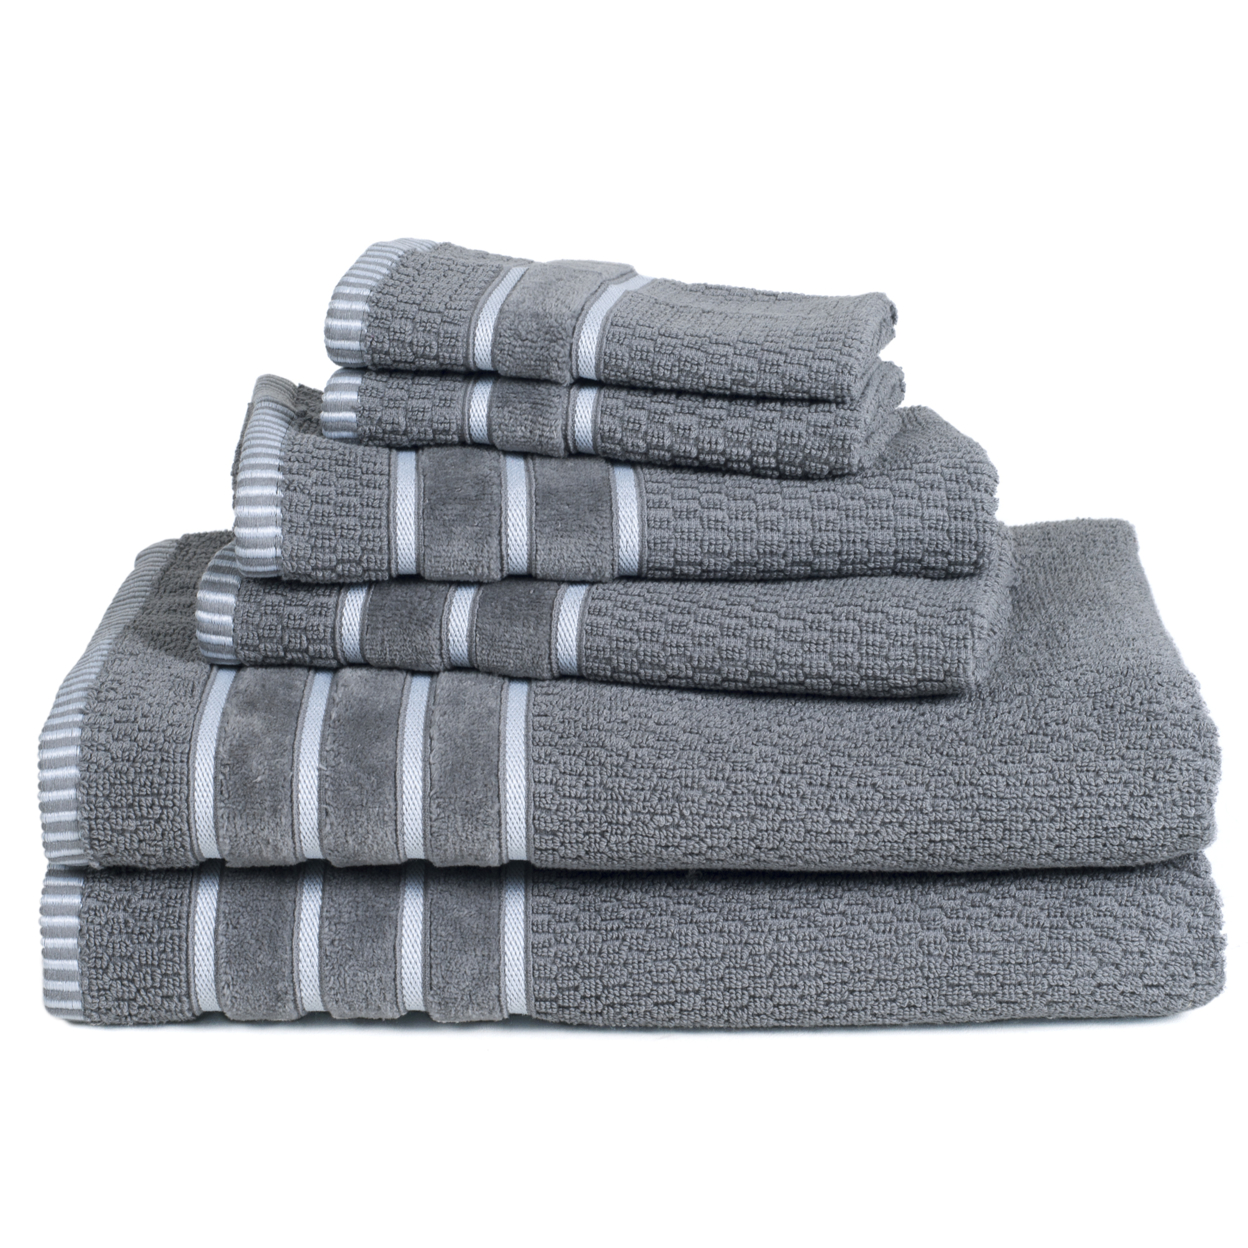 Lavish Home 100% Cotton Rice Weave 6 Piece Towel Set - Silver